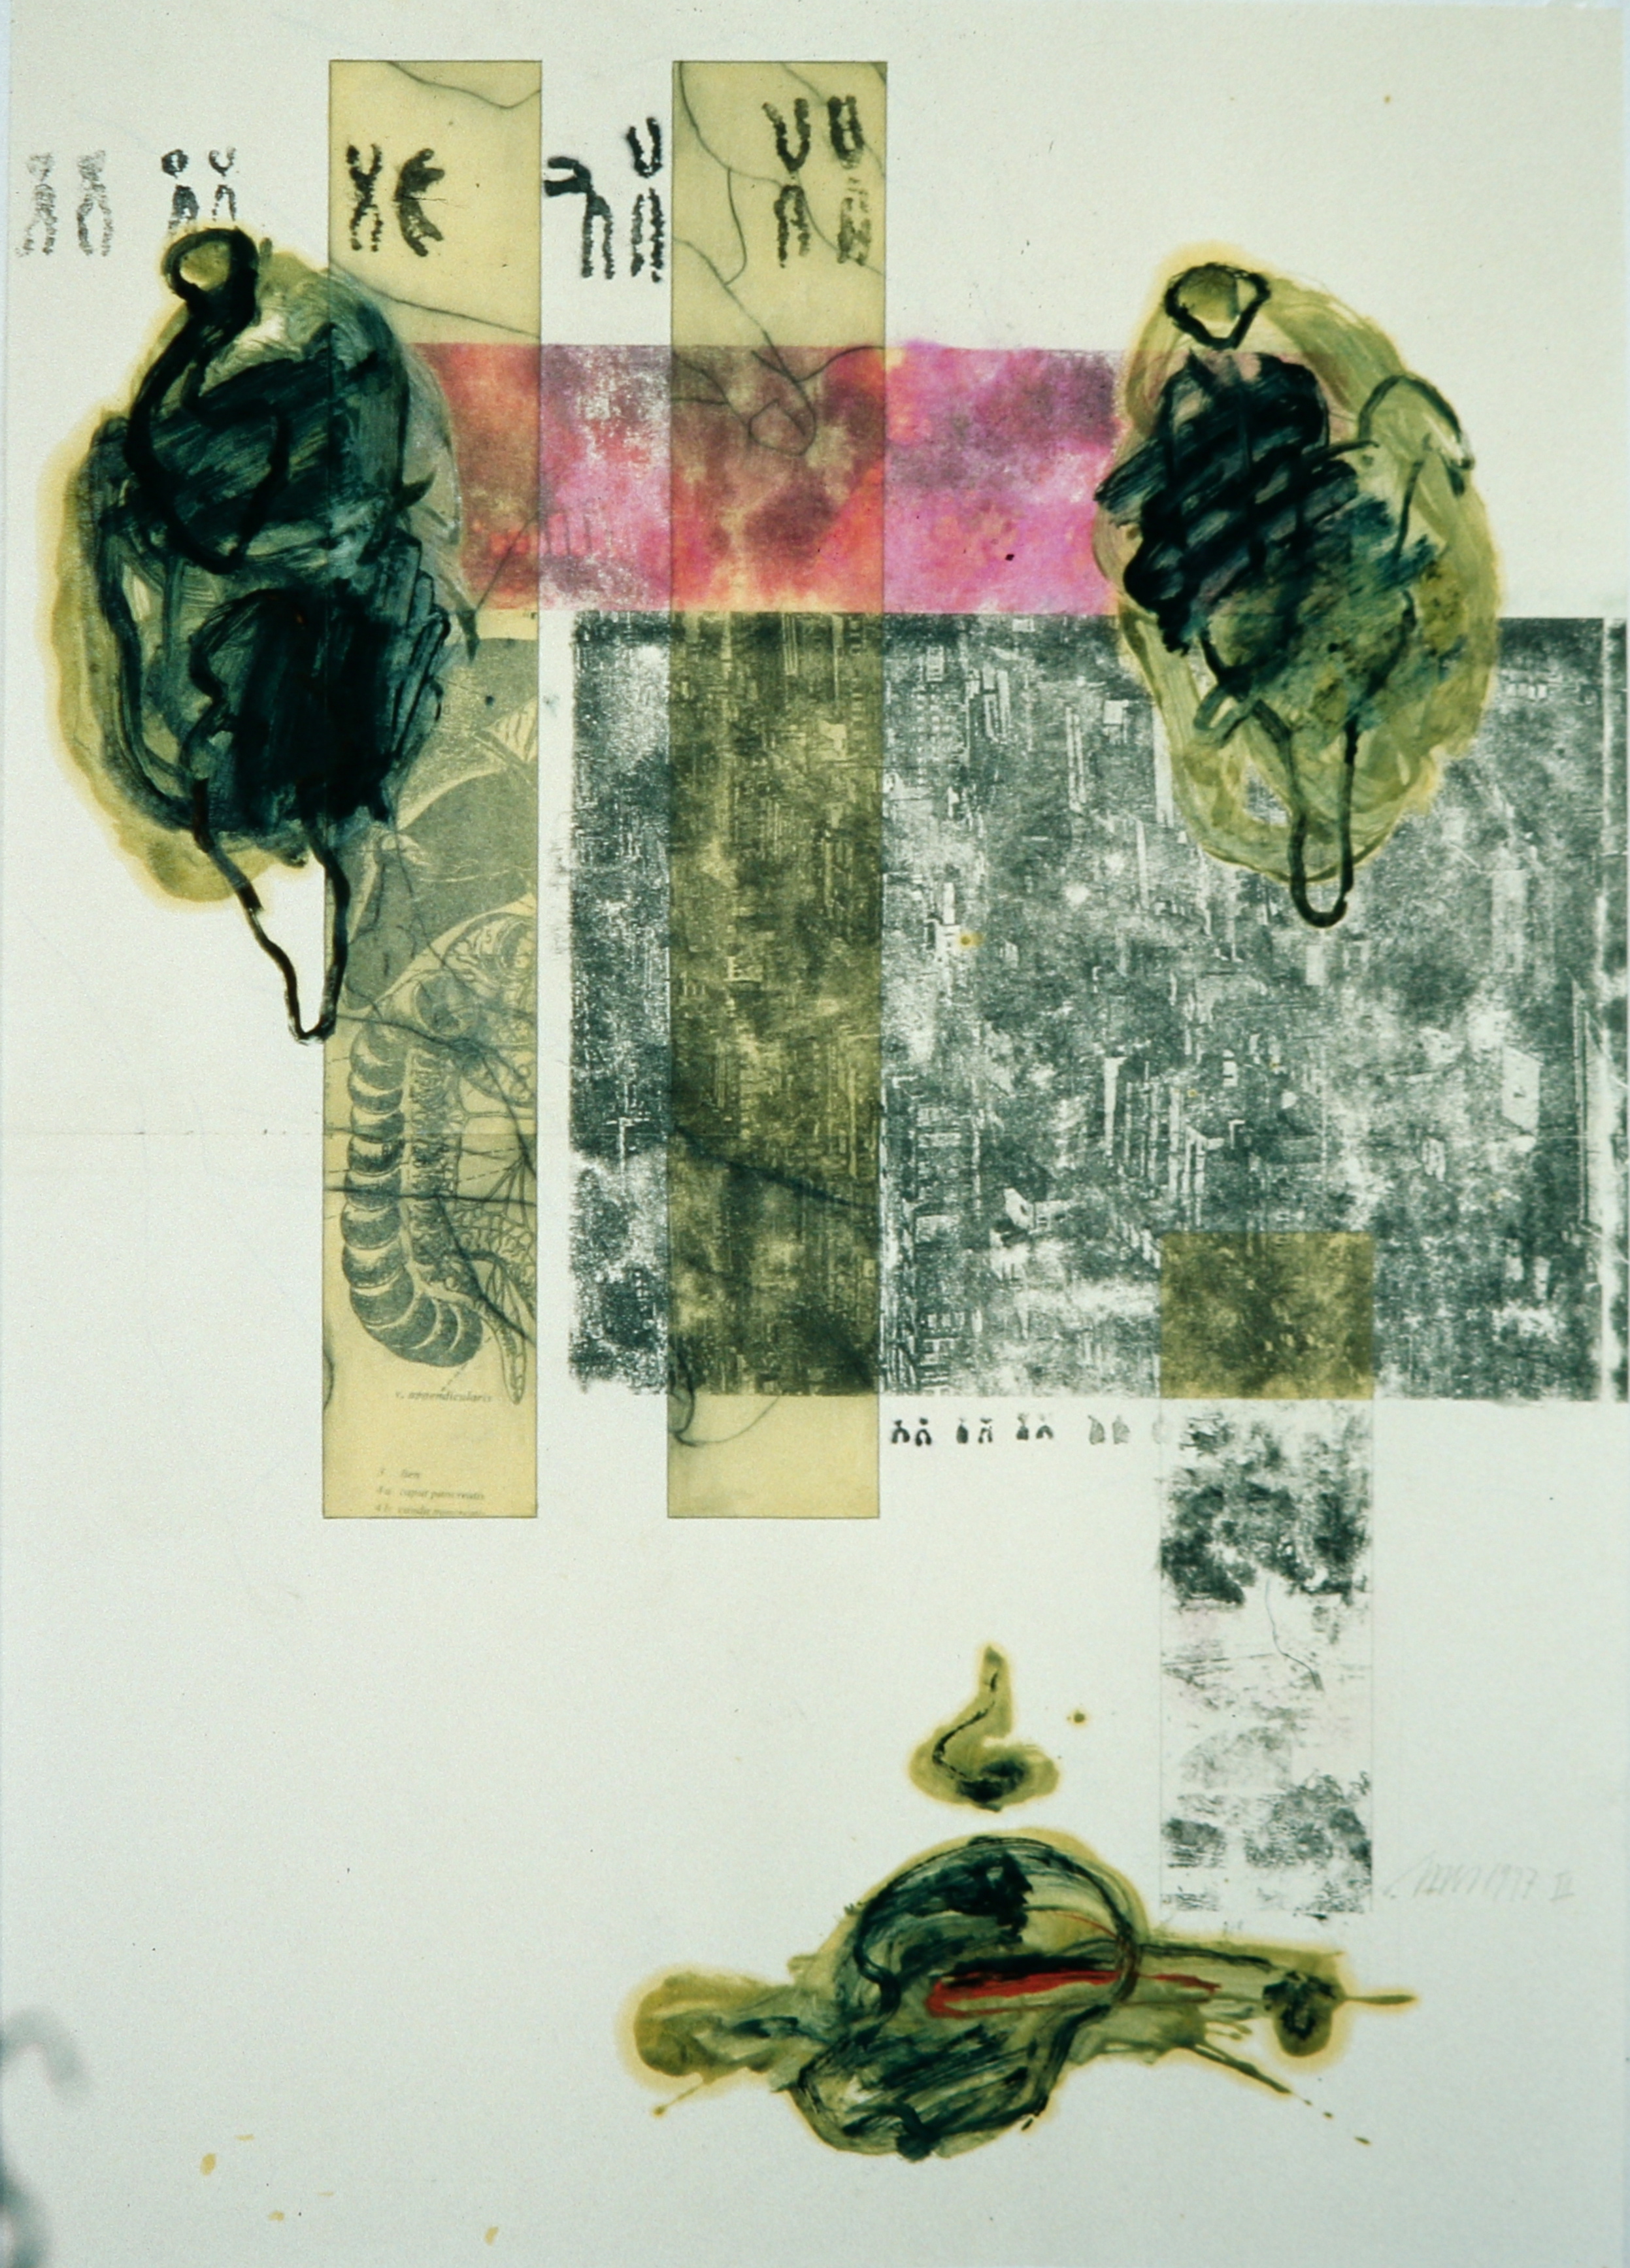 Affaires Ètranges II, Bleistift, Eiöltempera und Fotokopieumdruck auf Papier, 86 x 61 cm, 1997, Erwin Holl